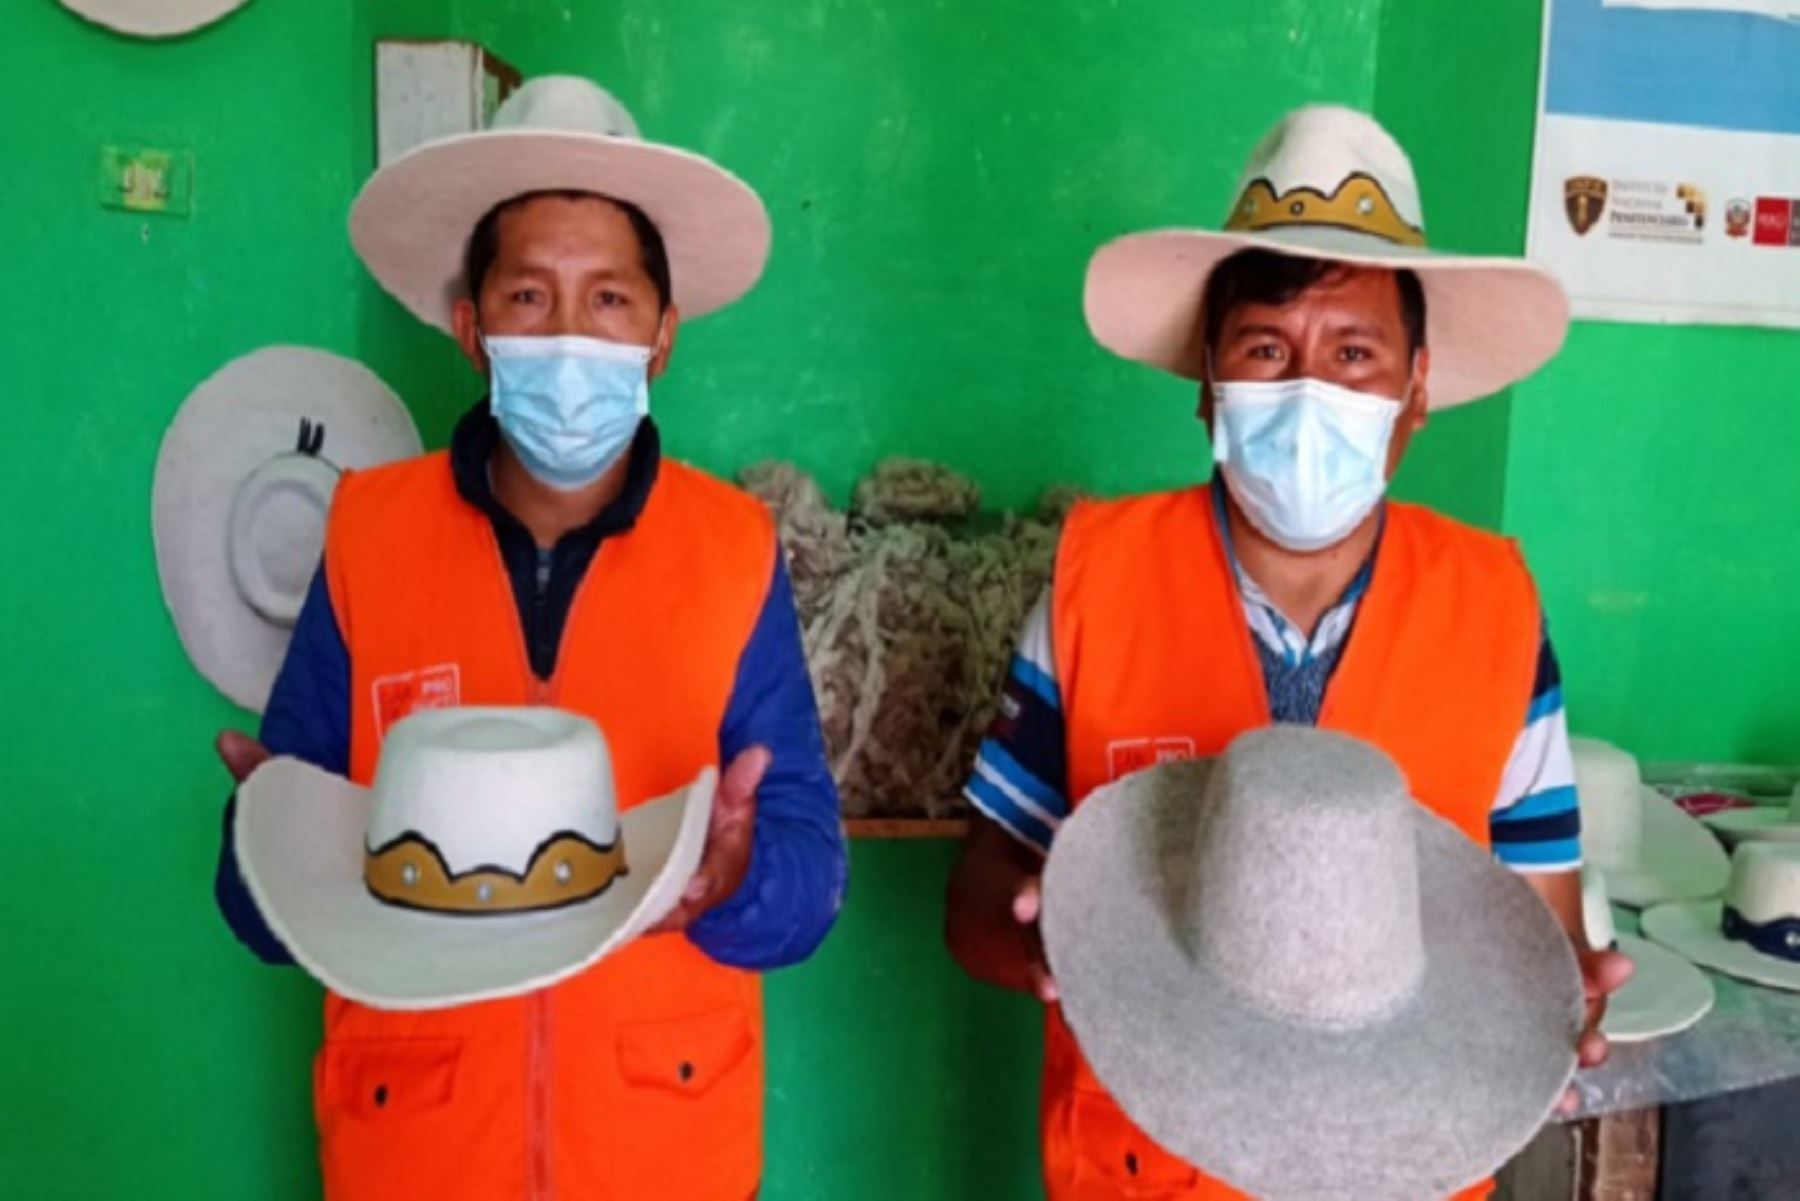 Los sombreros costumbristas en lana de oveja de las zonas andinas de Cusco, Chumbivilcas, Sicuani y Espinar se venden en el mercado local a 50 soles.